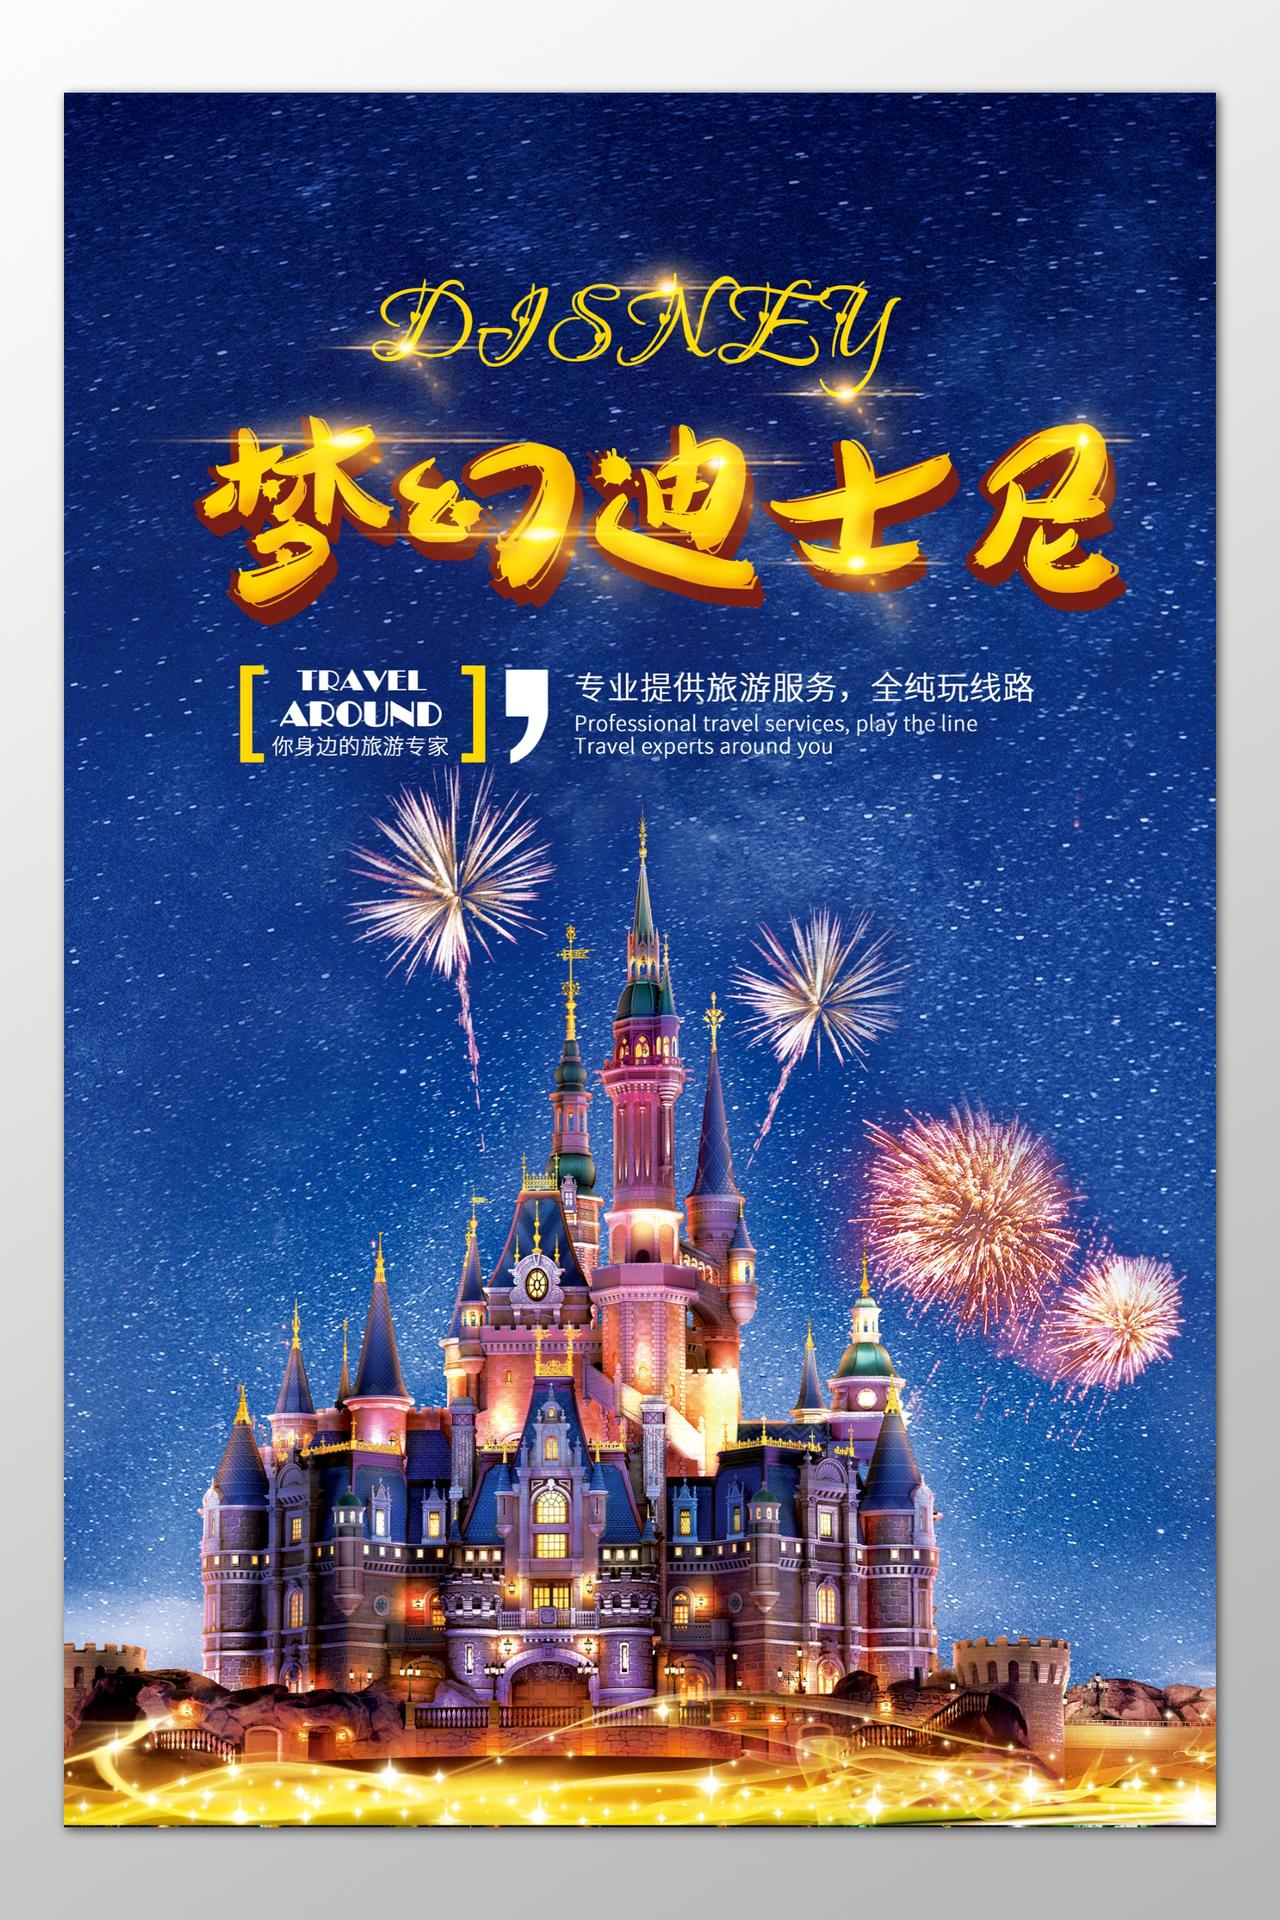 迪士尼旅游专业旅游服务梦幻蓝色烟花星空海报模板